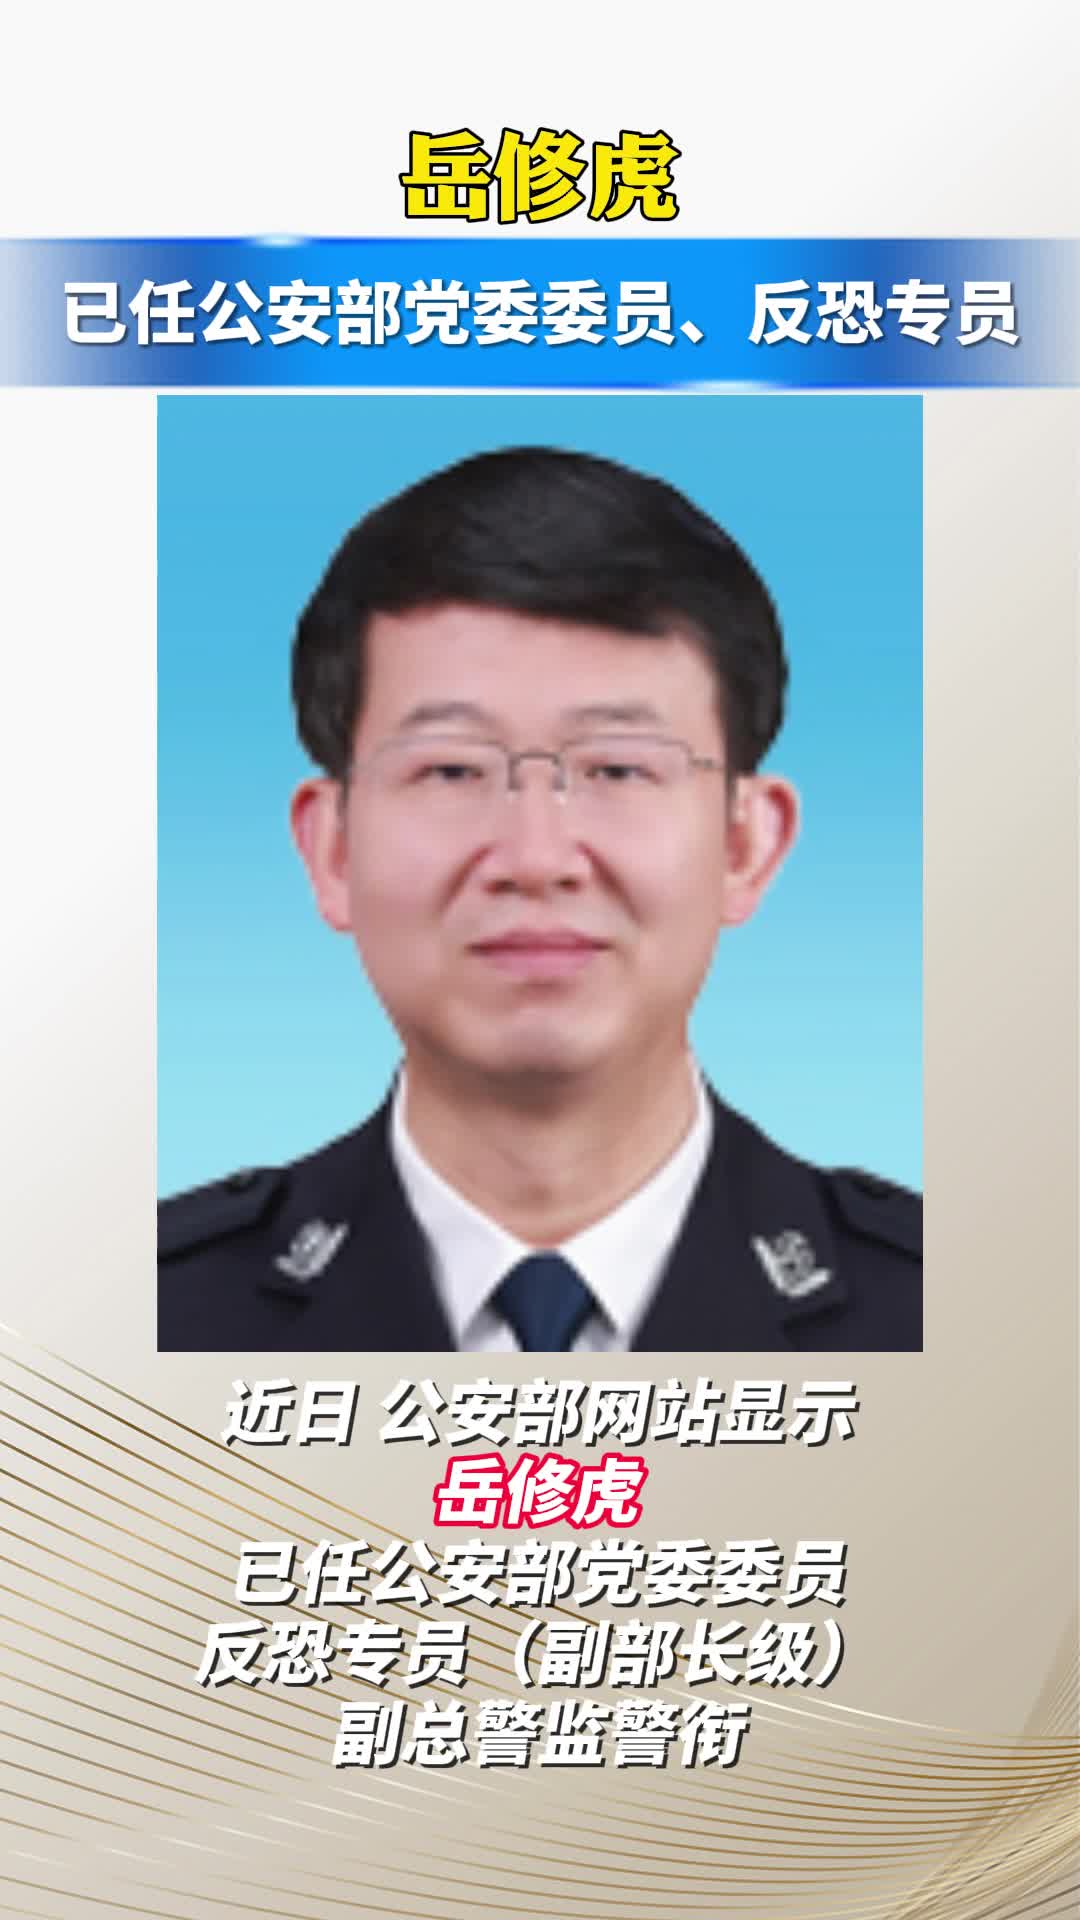 岳修虎已任公安部党委委员、反恐专员